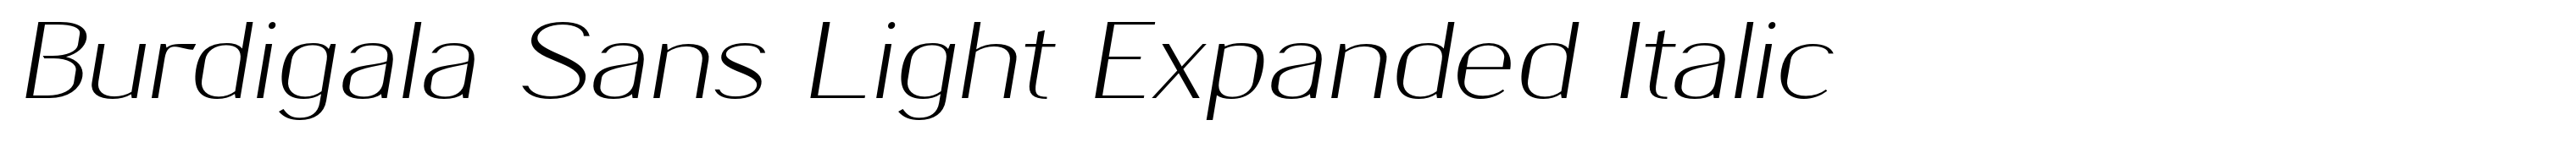 Burdigala Sans Light Expanded Italic